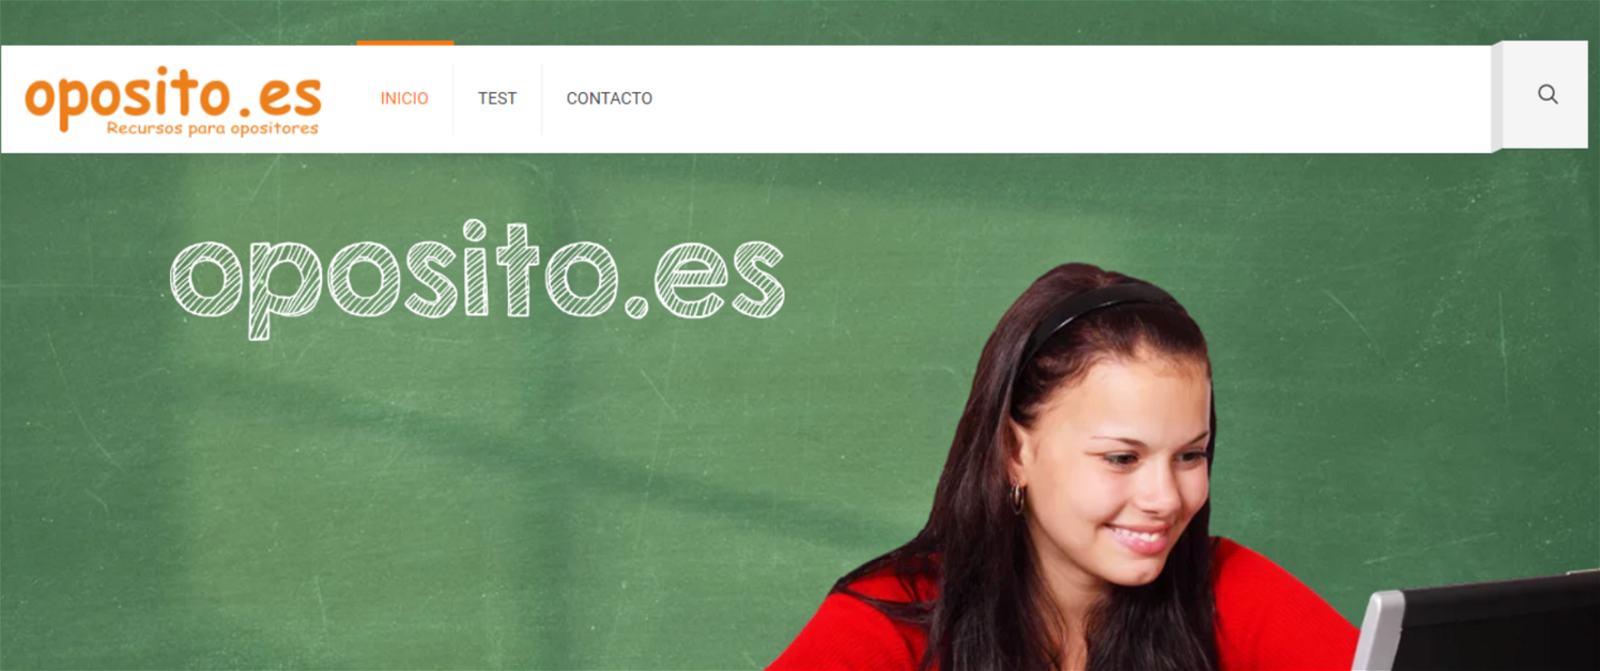 Banner de inicio de la web Oposito.es